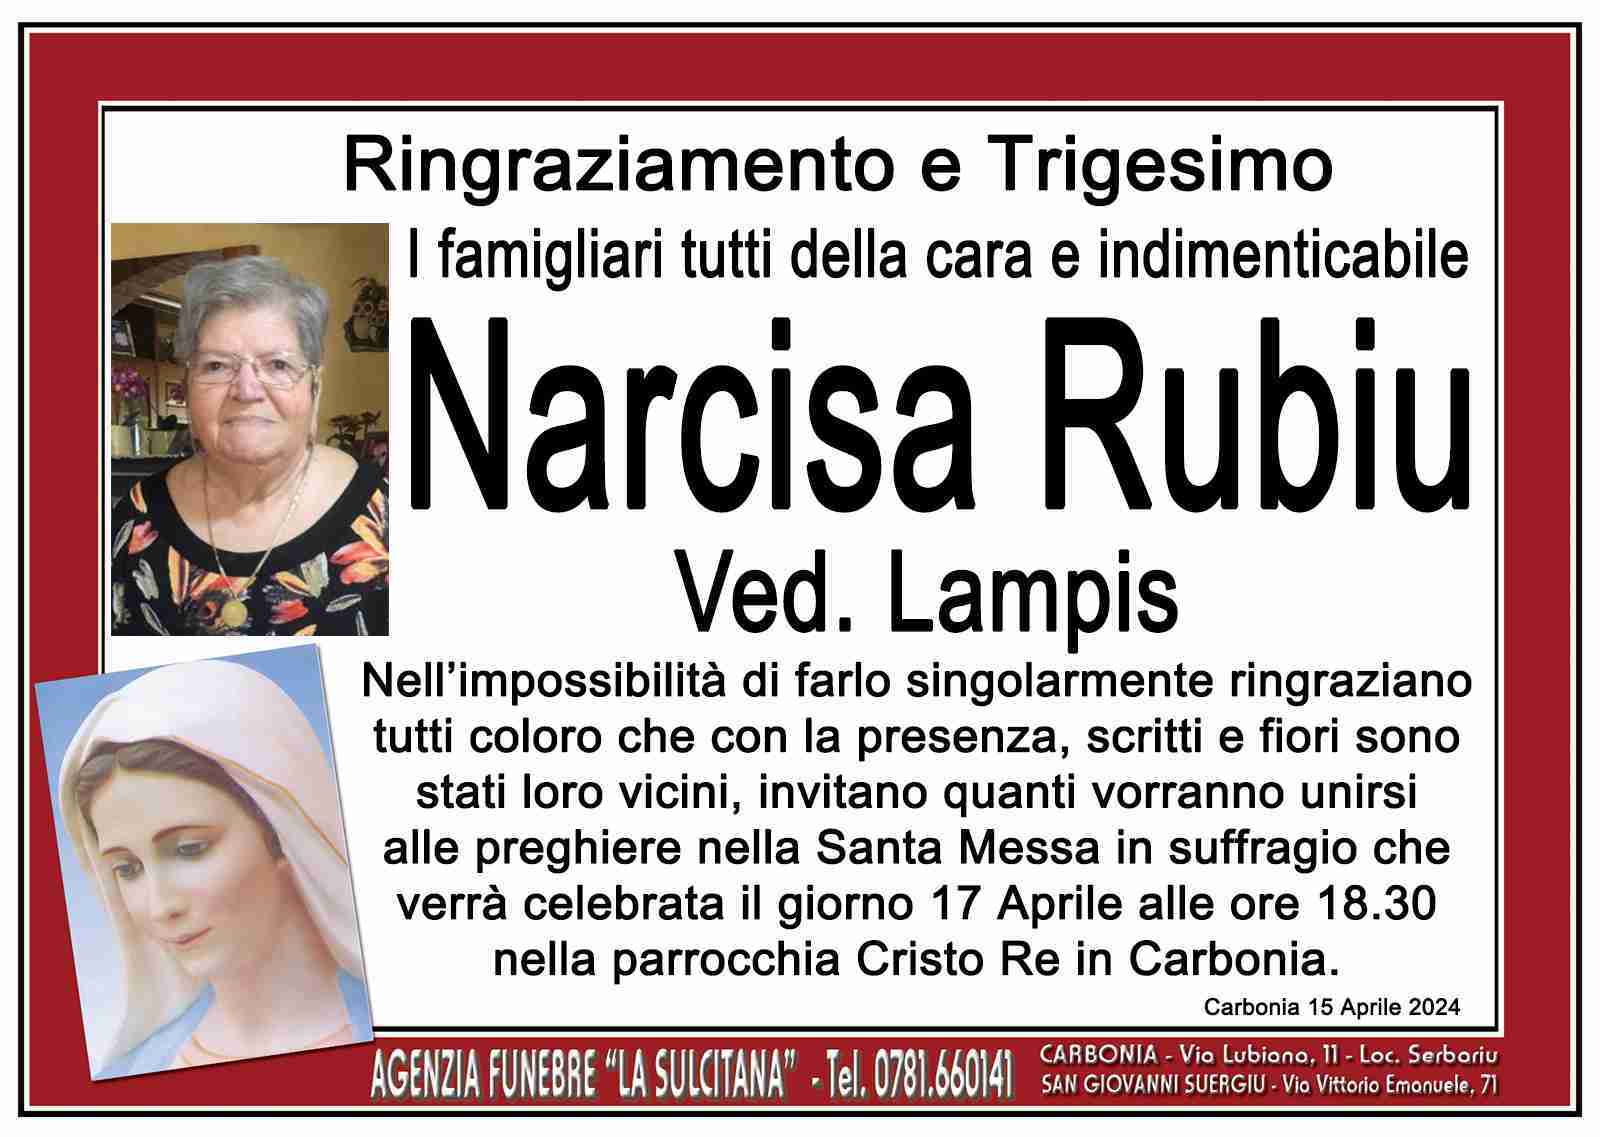 Narcisa Rubiu